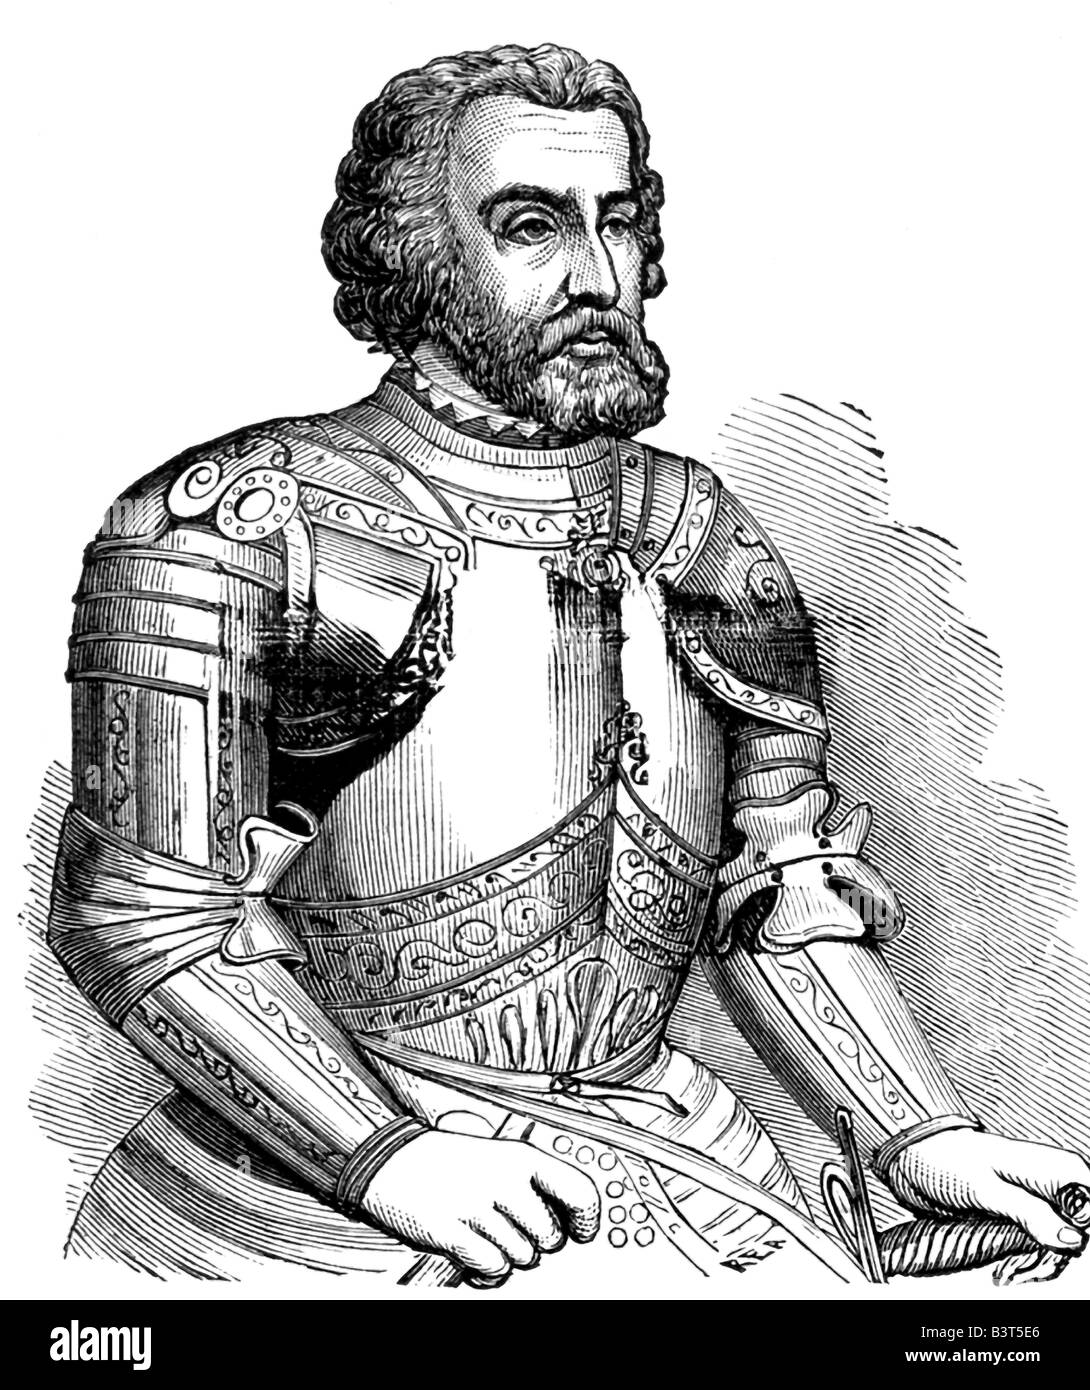 Hernando De Soto (c. 1500-1542) was a Spanish conquistador. Stock Photo